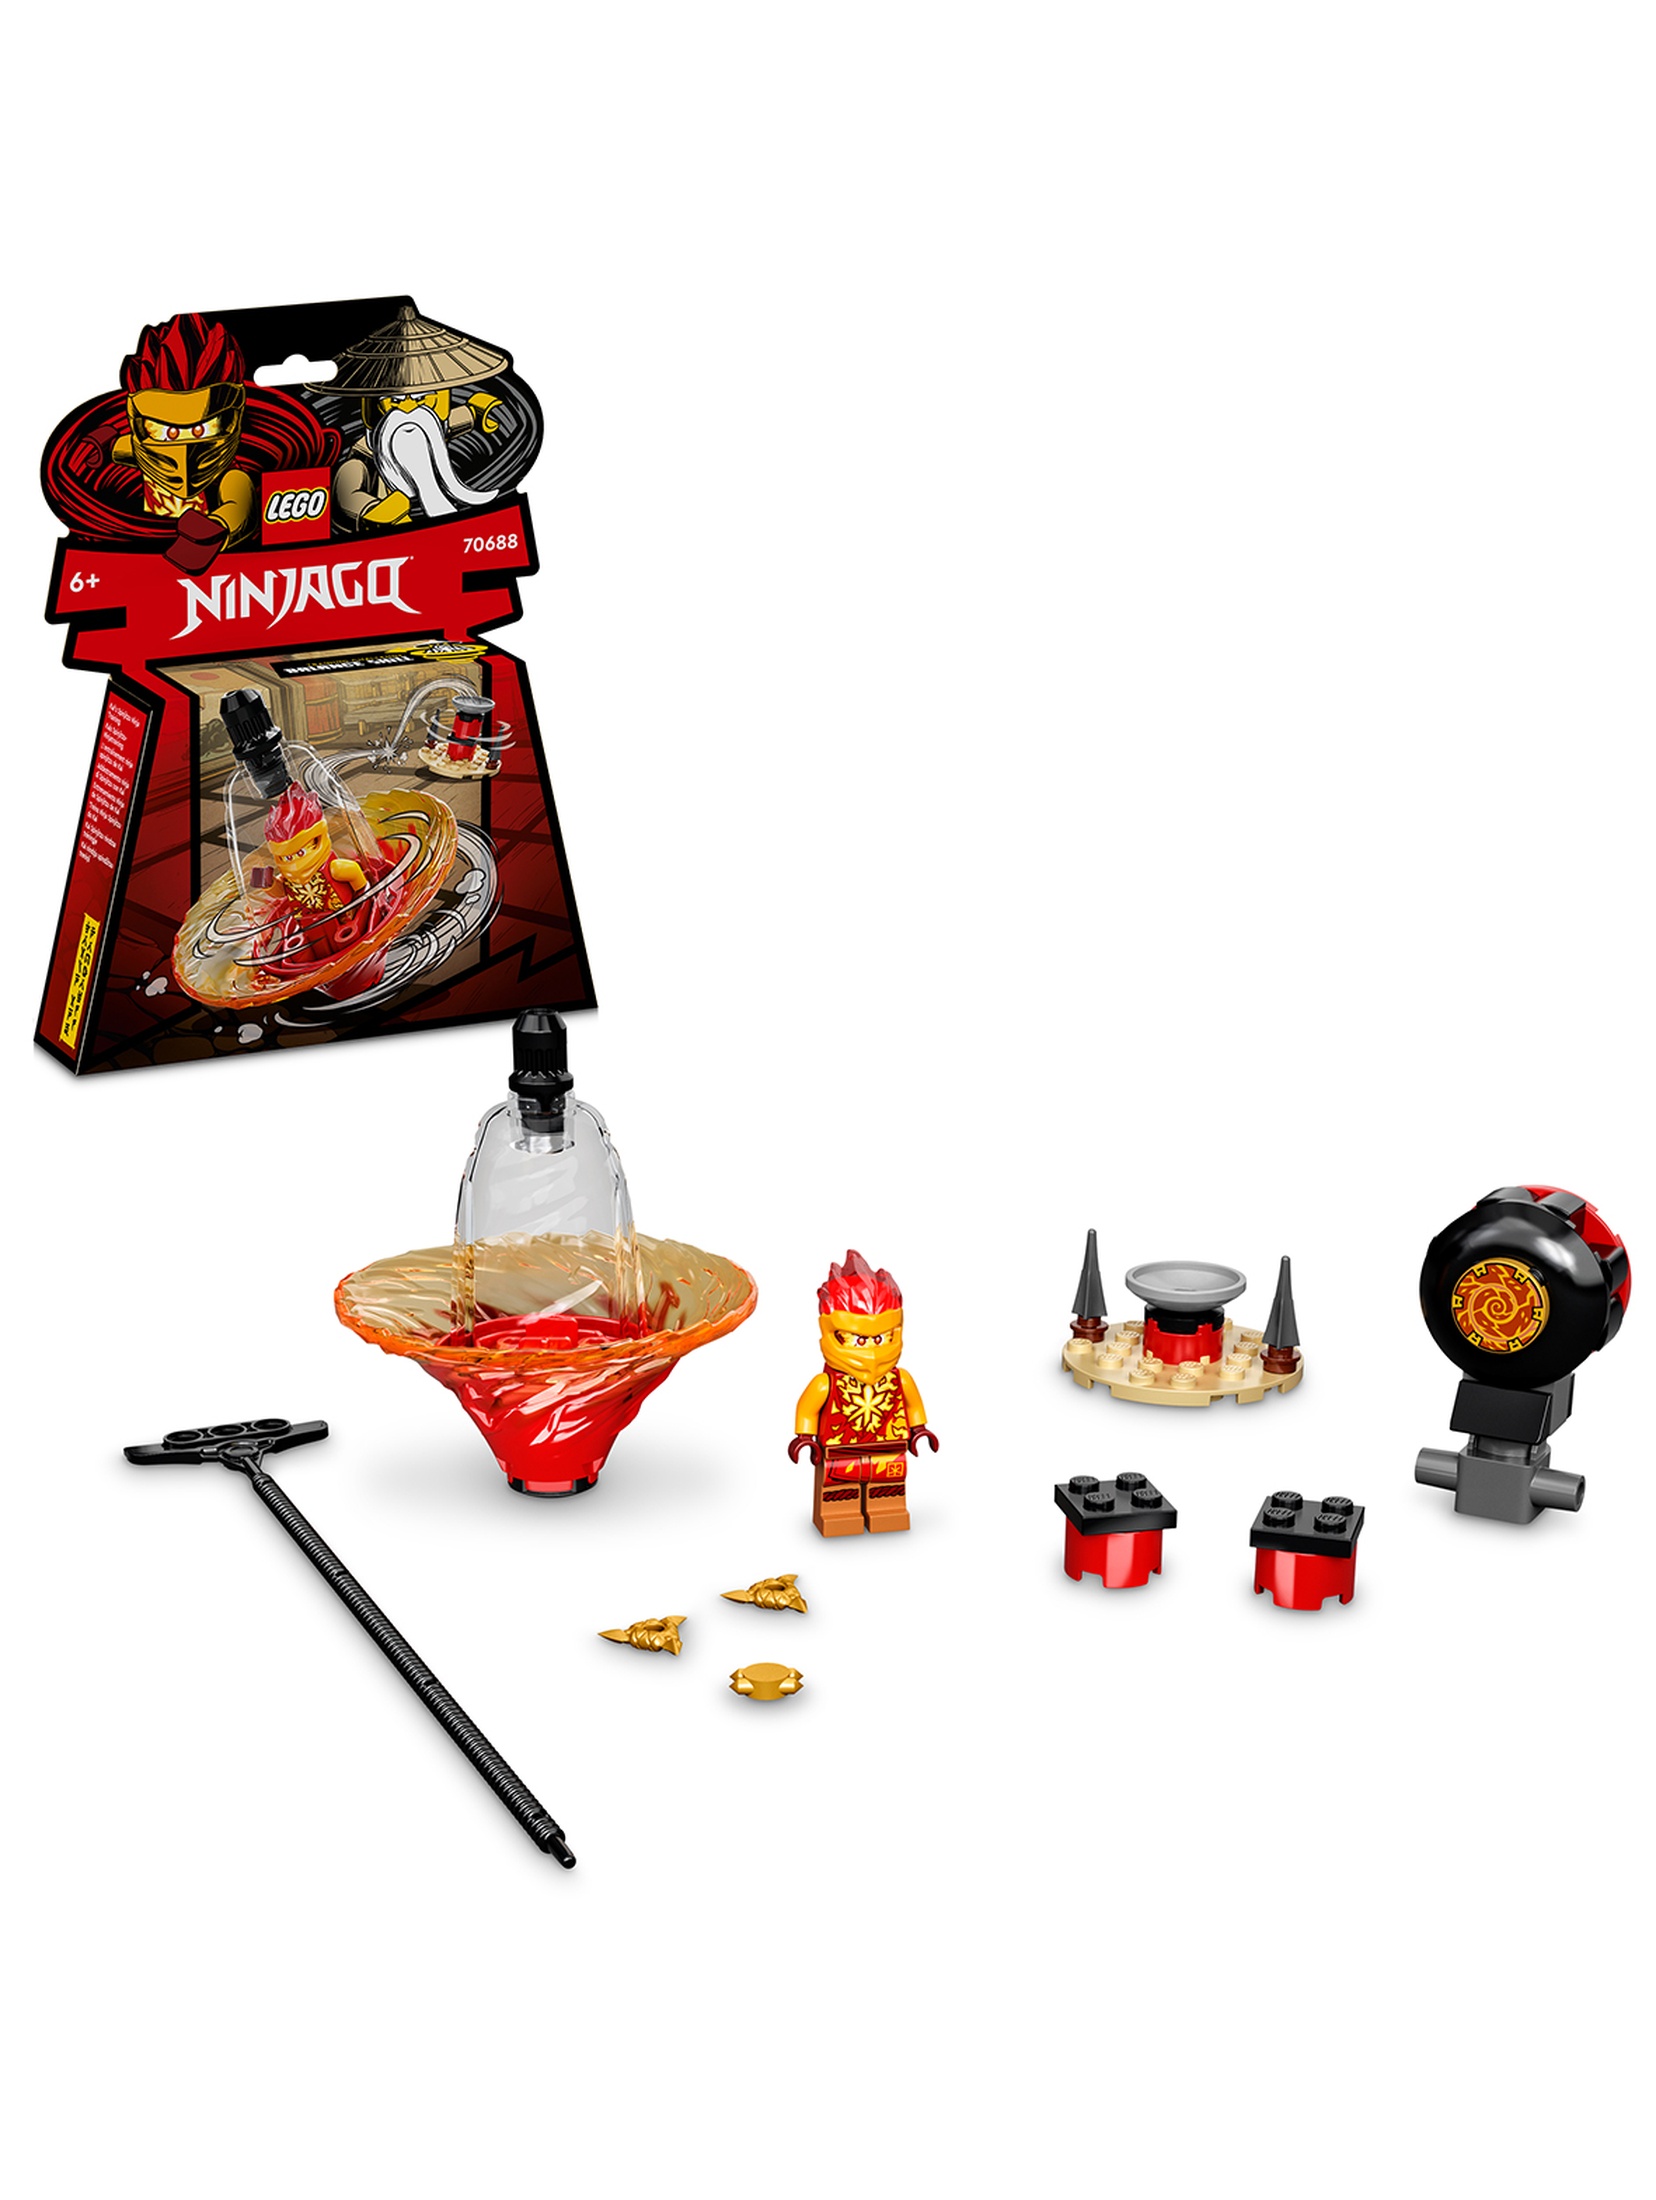 LEGO Ninjago - Szkolenie wojownika Spinjitzu Kaia 70688 - 32 elementy, wiek 6+